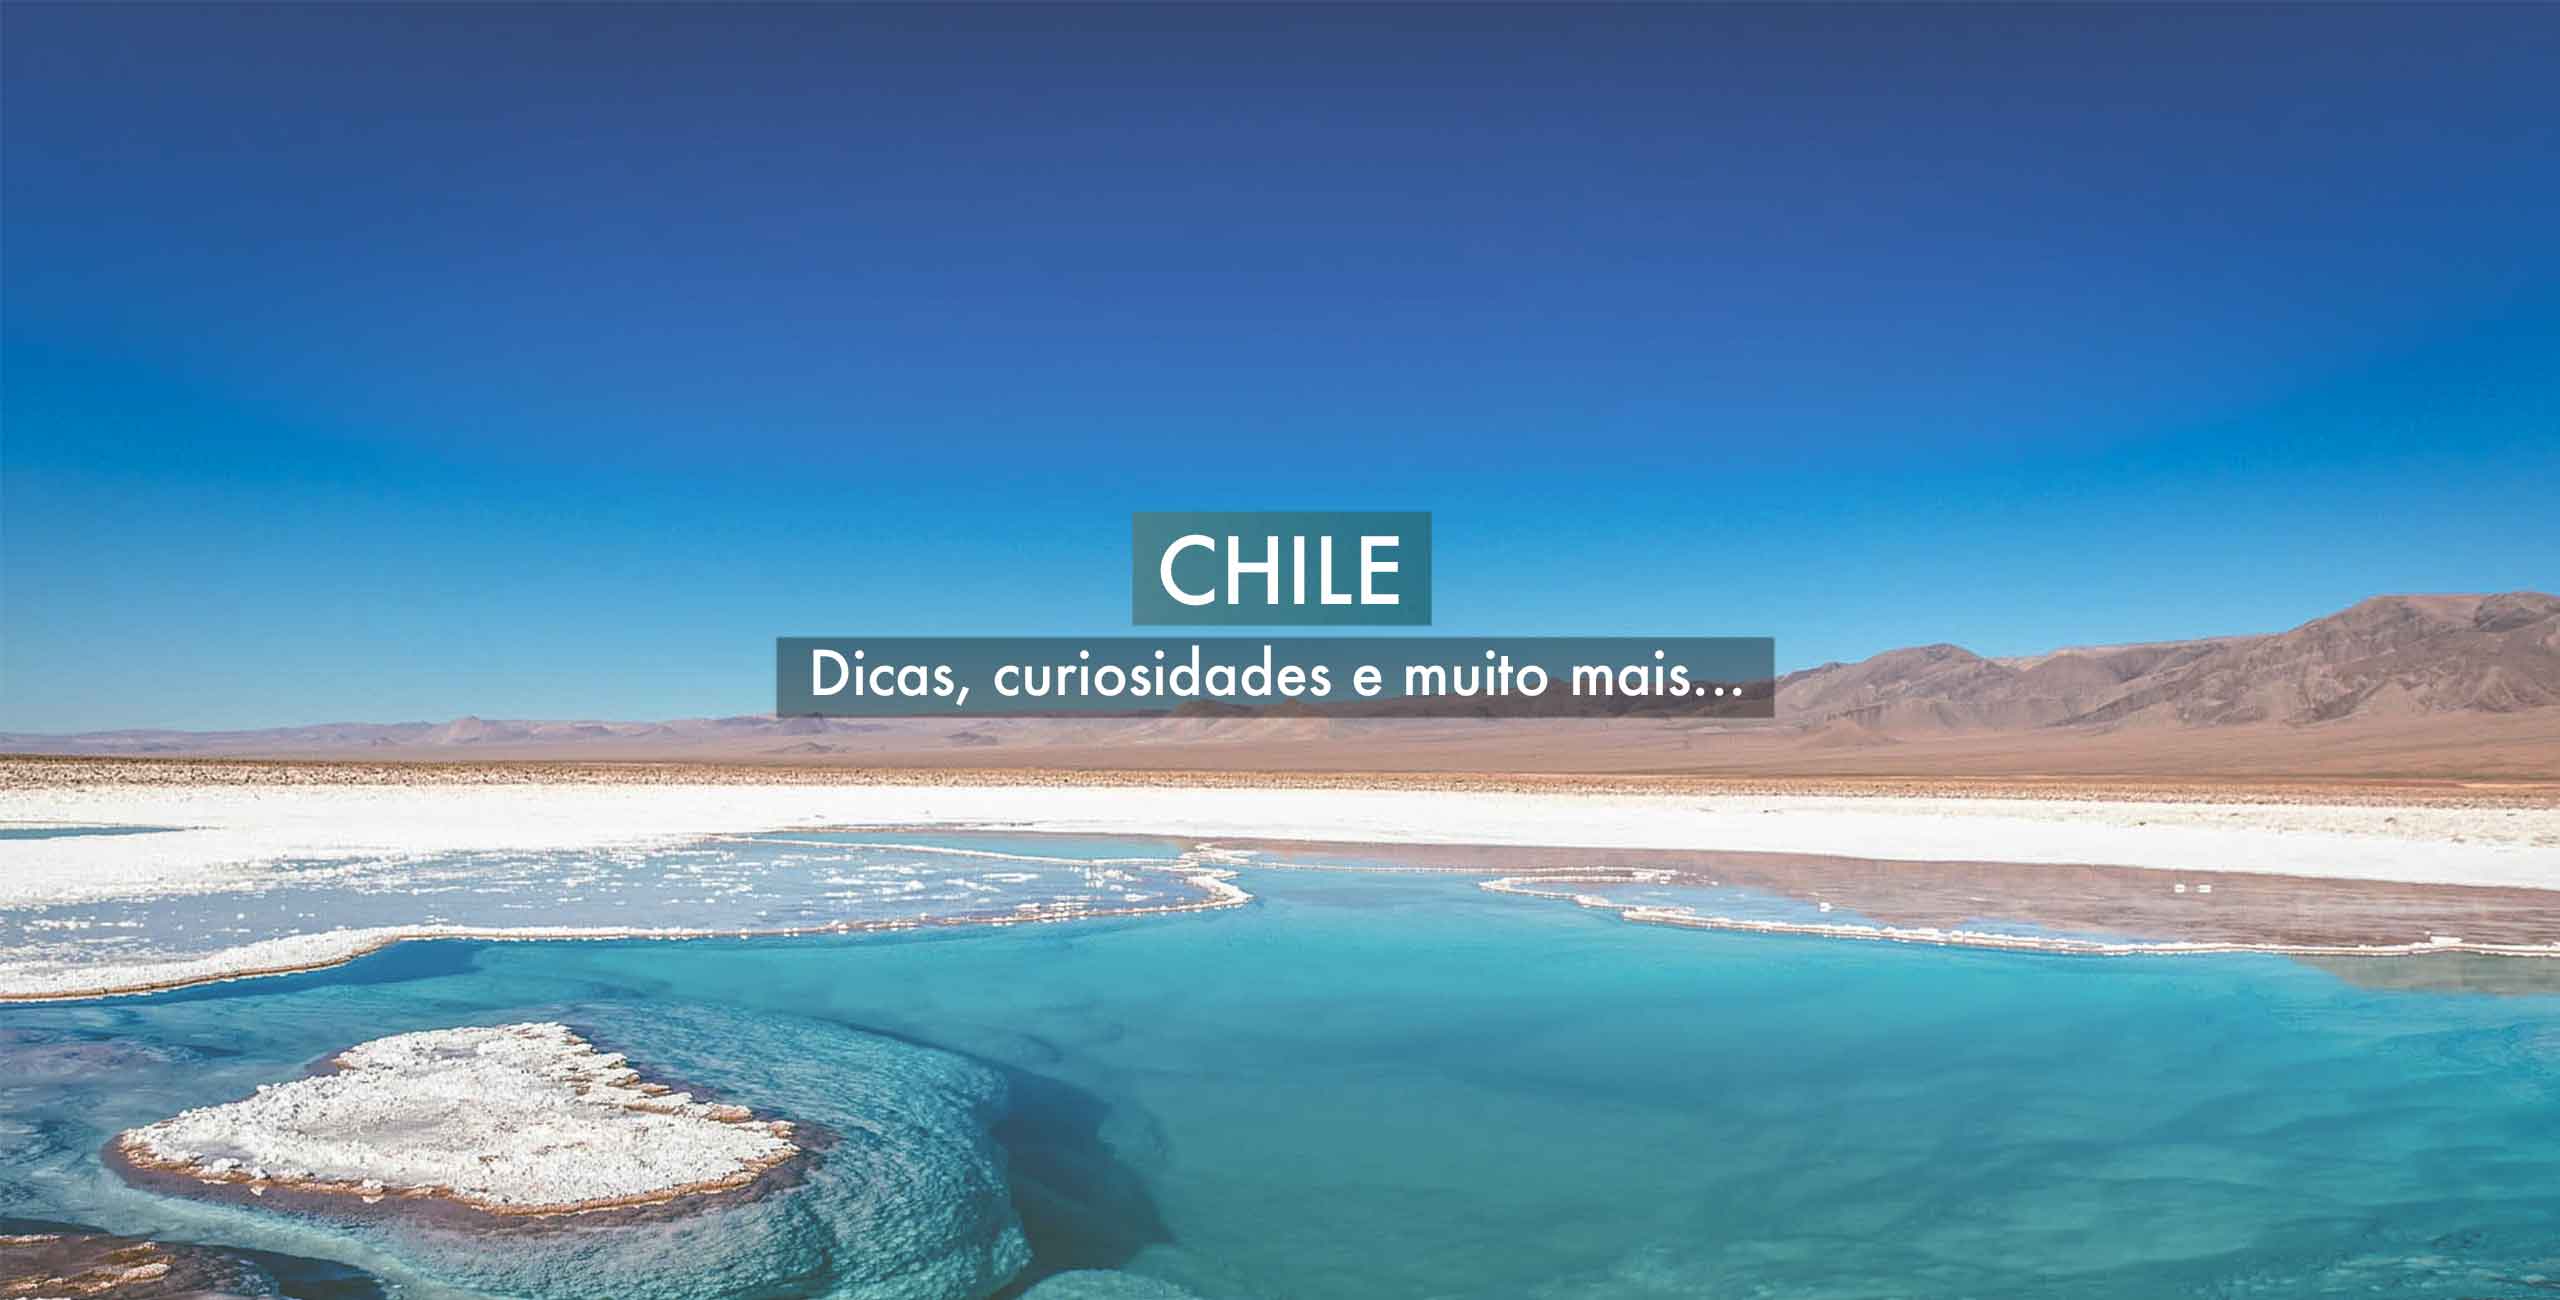 Chile - Guia de dicas